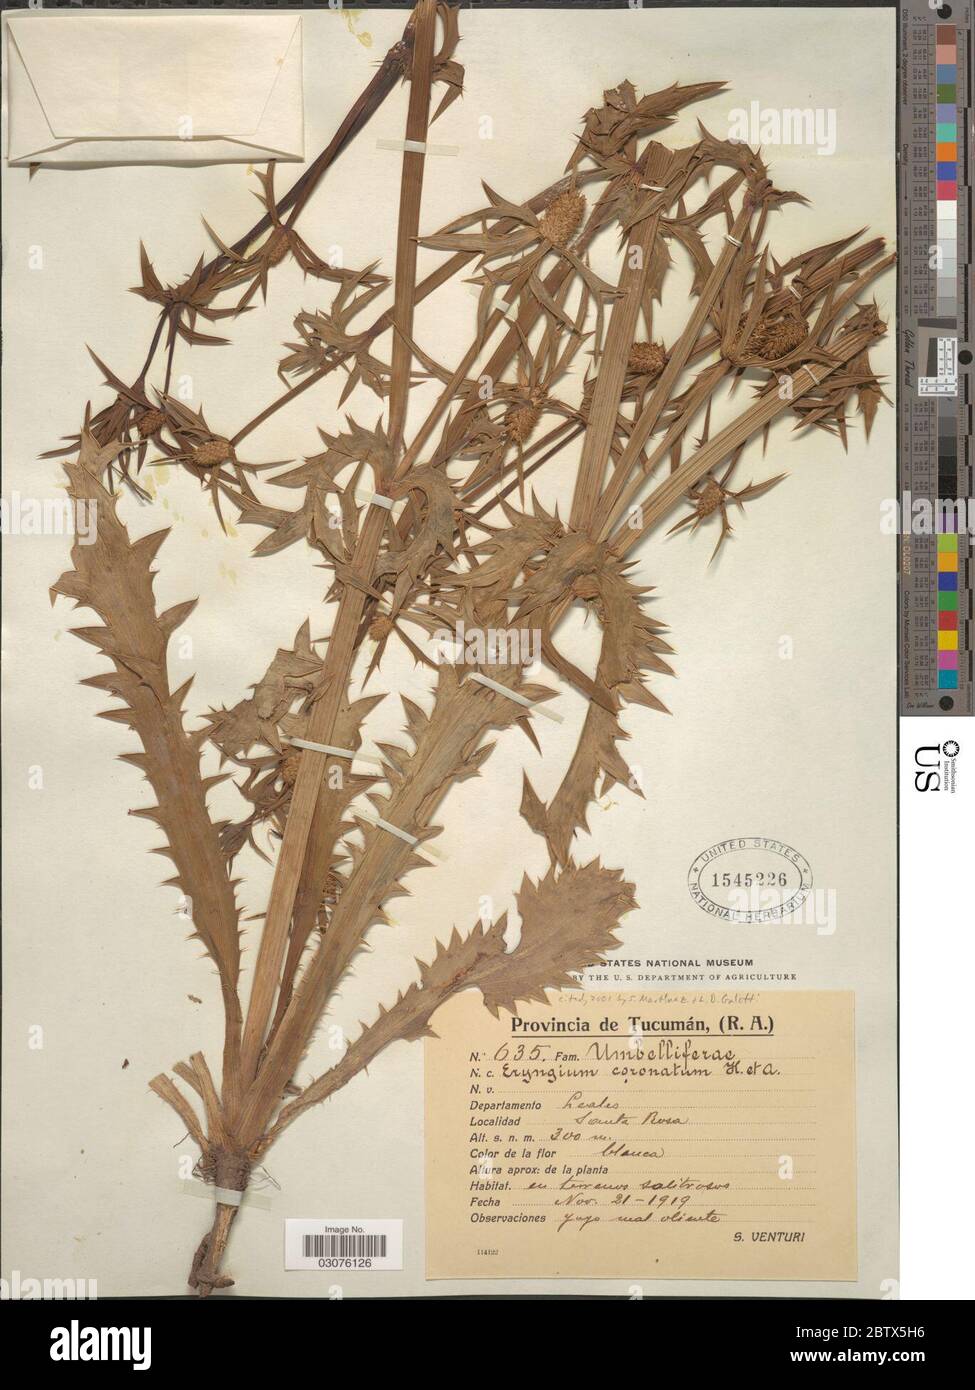 Eryngium coronatum Hook Arn. Stock Photo